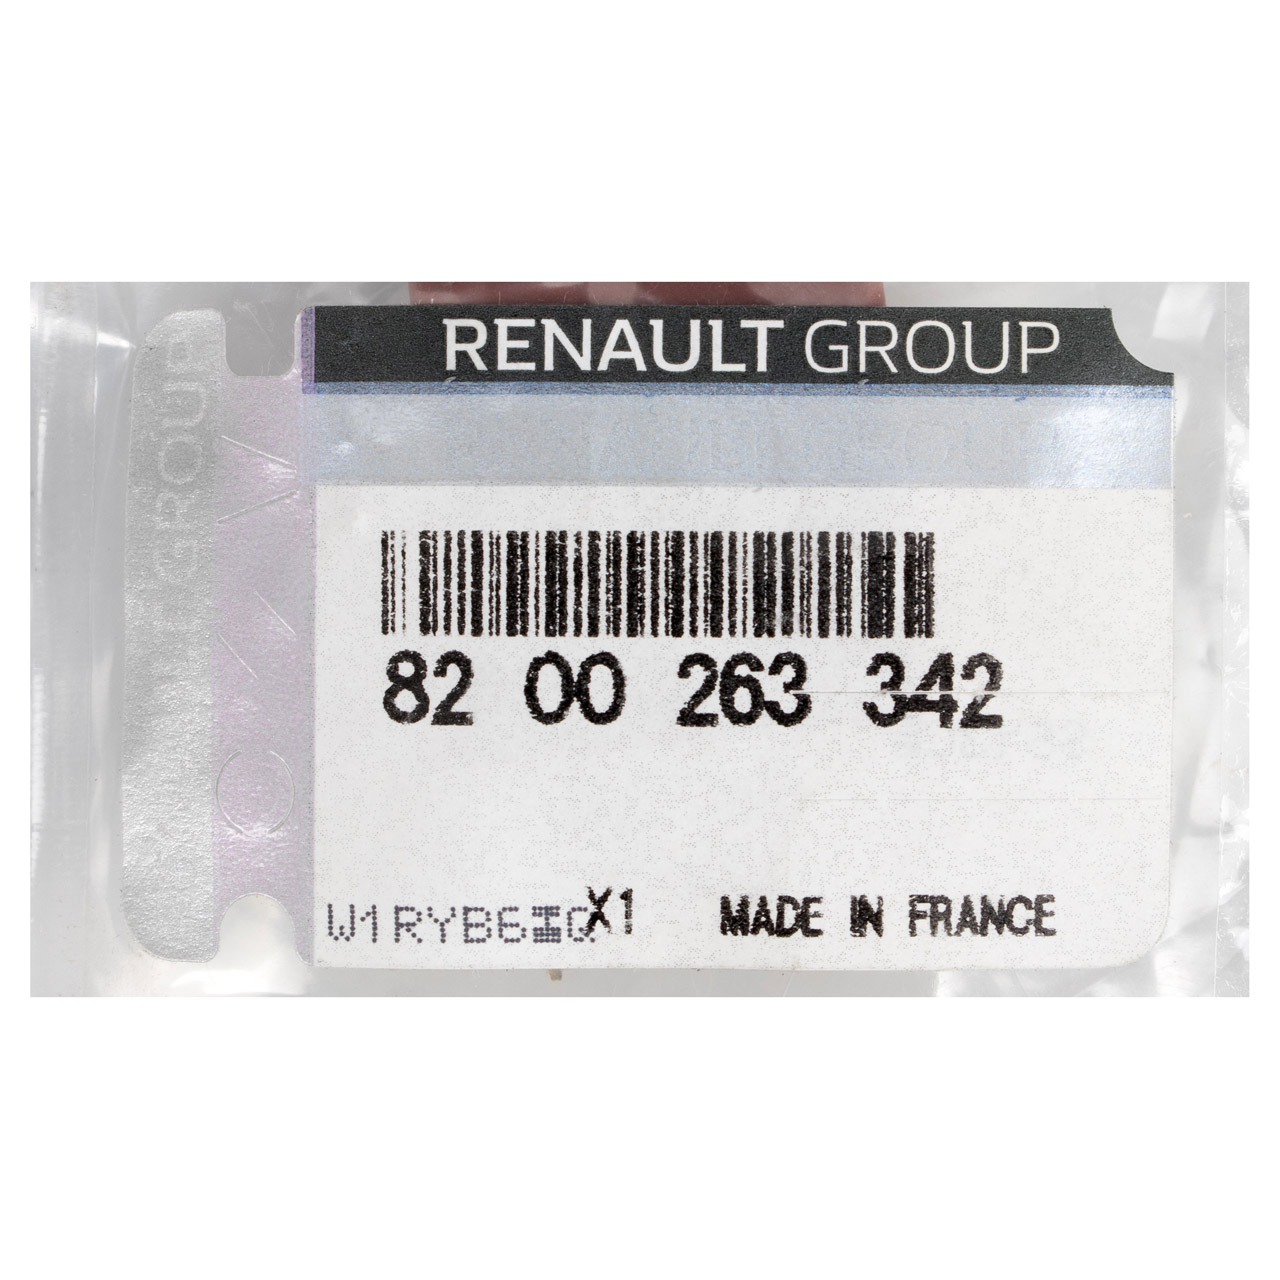 ORIGINAL Renault Multifunktionsrelais Relais Latitude 2.0 16V 8200263342